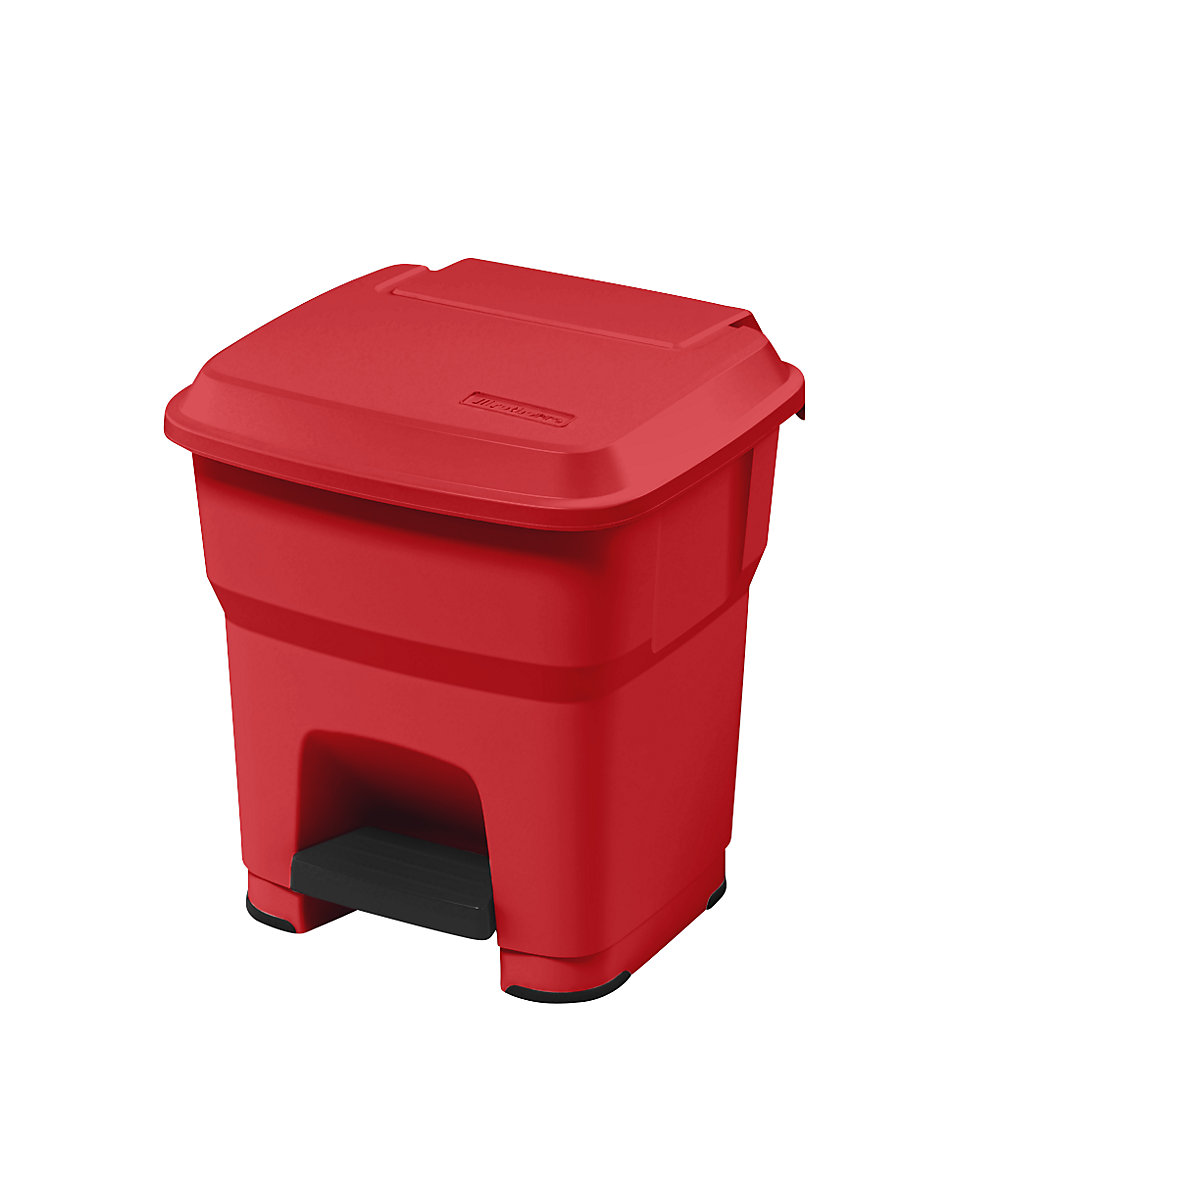 rothopro – Collecteur de déchets à pédale HERA, capacité 35 l, l x h x p 390 x 440 x 390 mm, rouge